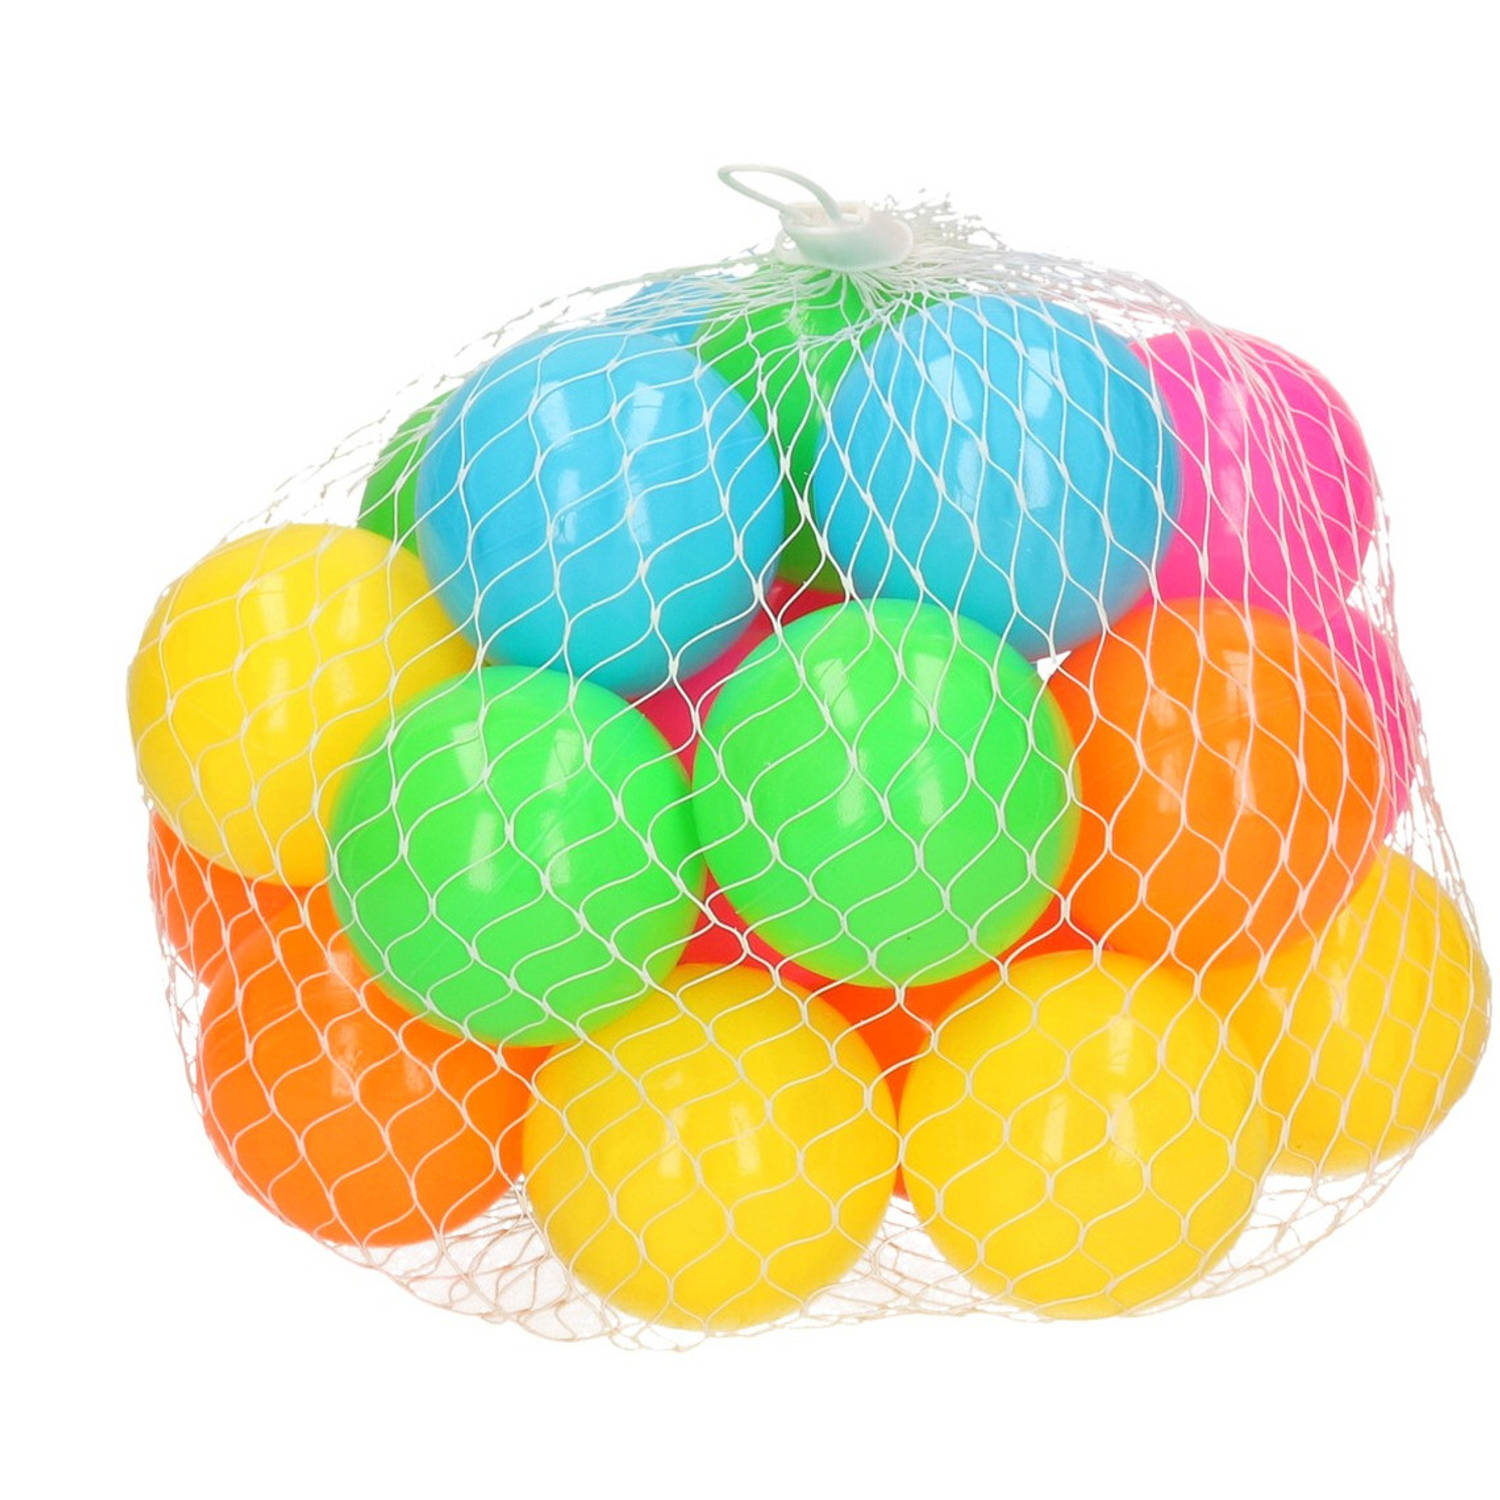 25x Ballenbak Ballen Neon Kleuren 6 Cm - Speelgoed - Ballenbakballen In Felle Kleuren